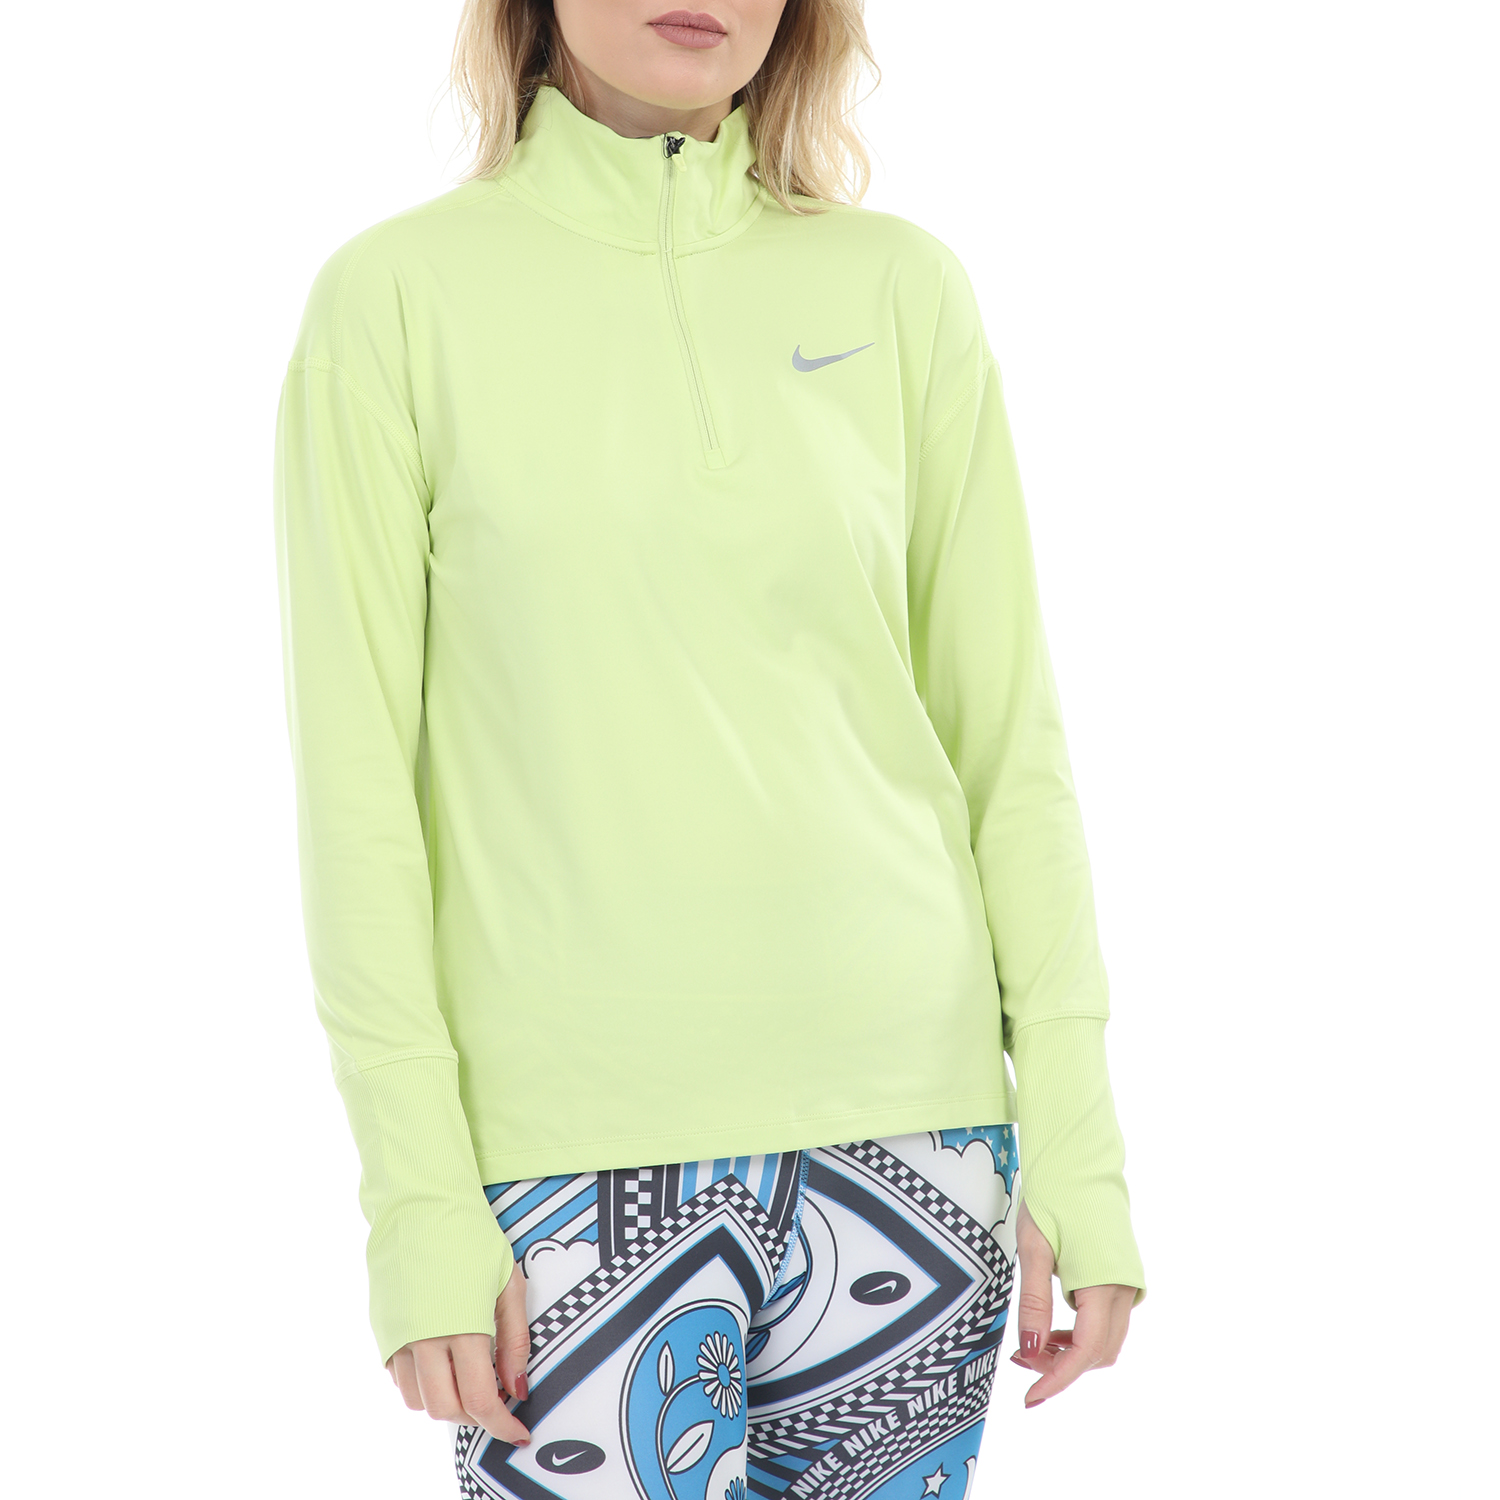 Γυναικεία/Ρούχα/Αθλητικά/Φούτερ-Μακρυμάνικα NIKE - Γυναικεία μπλούζα Nike Element TOP HZ κίτρινη